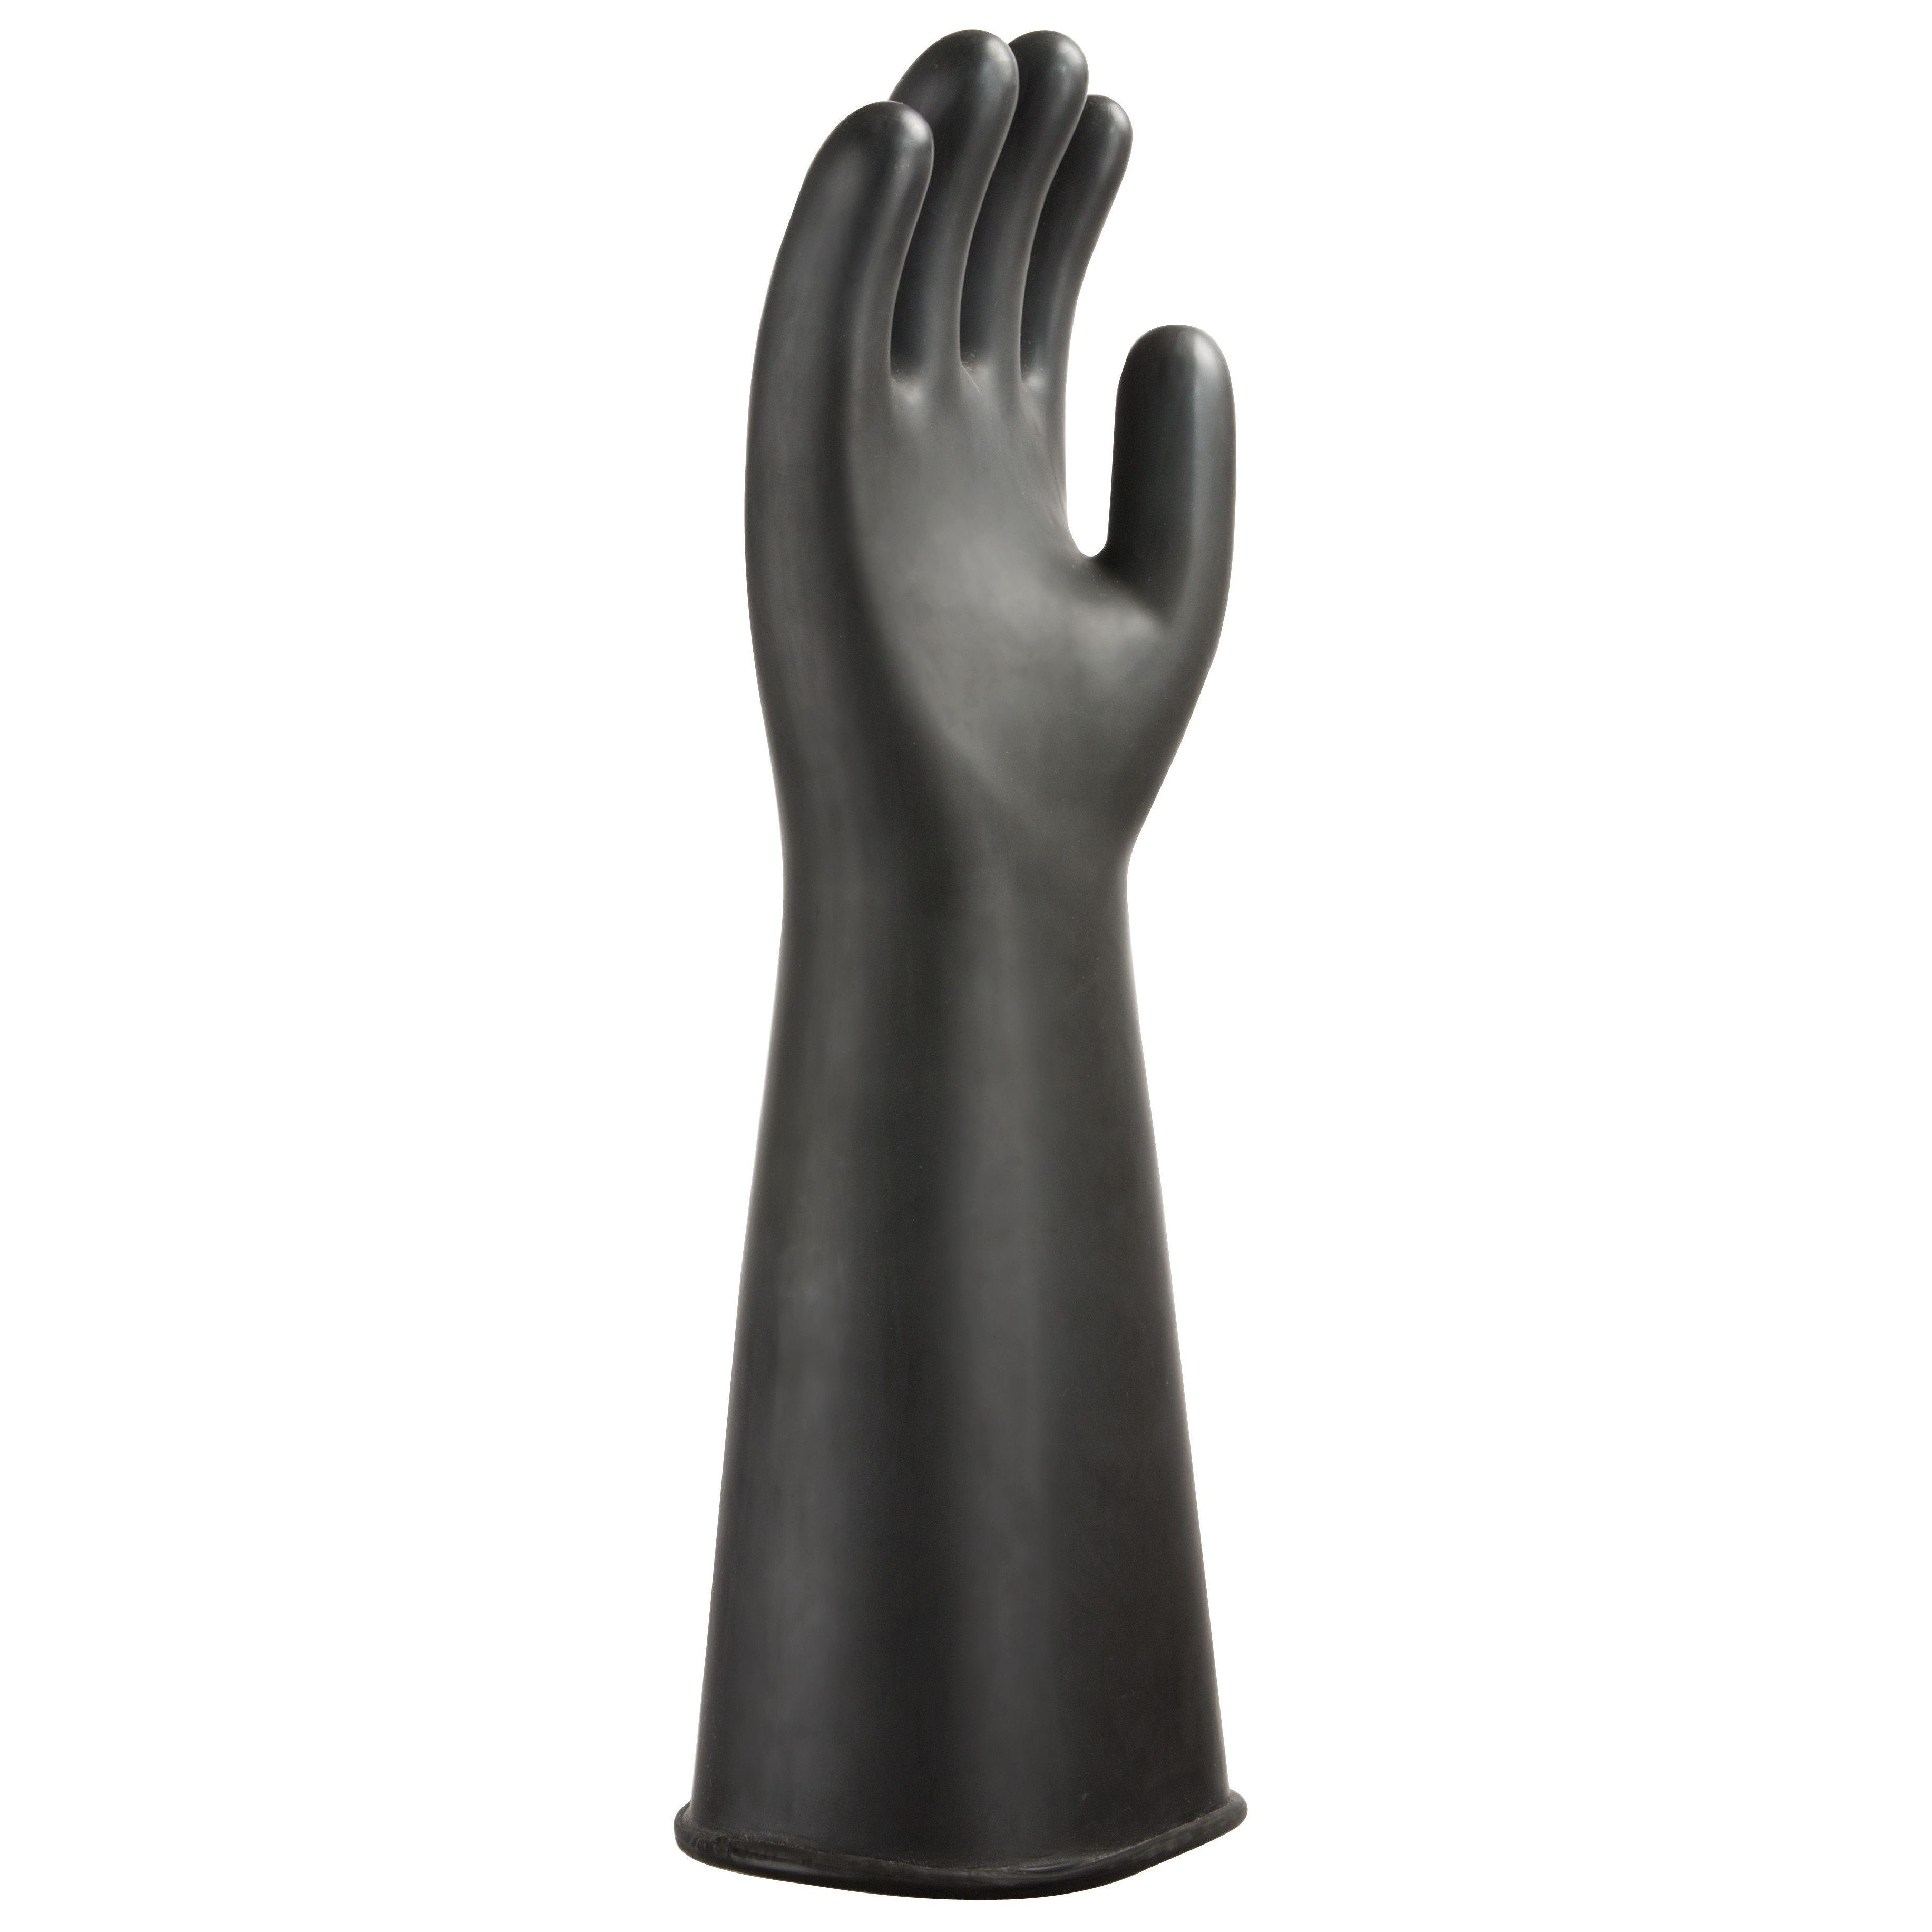 Chemprotec Elbow Length Gloves EN388 4131